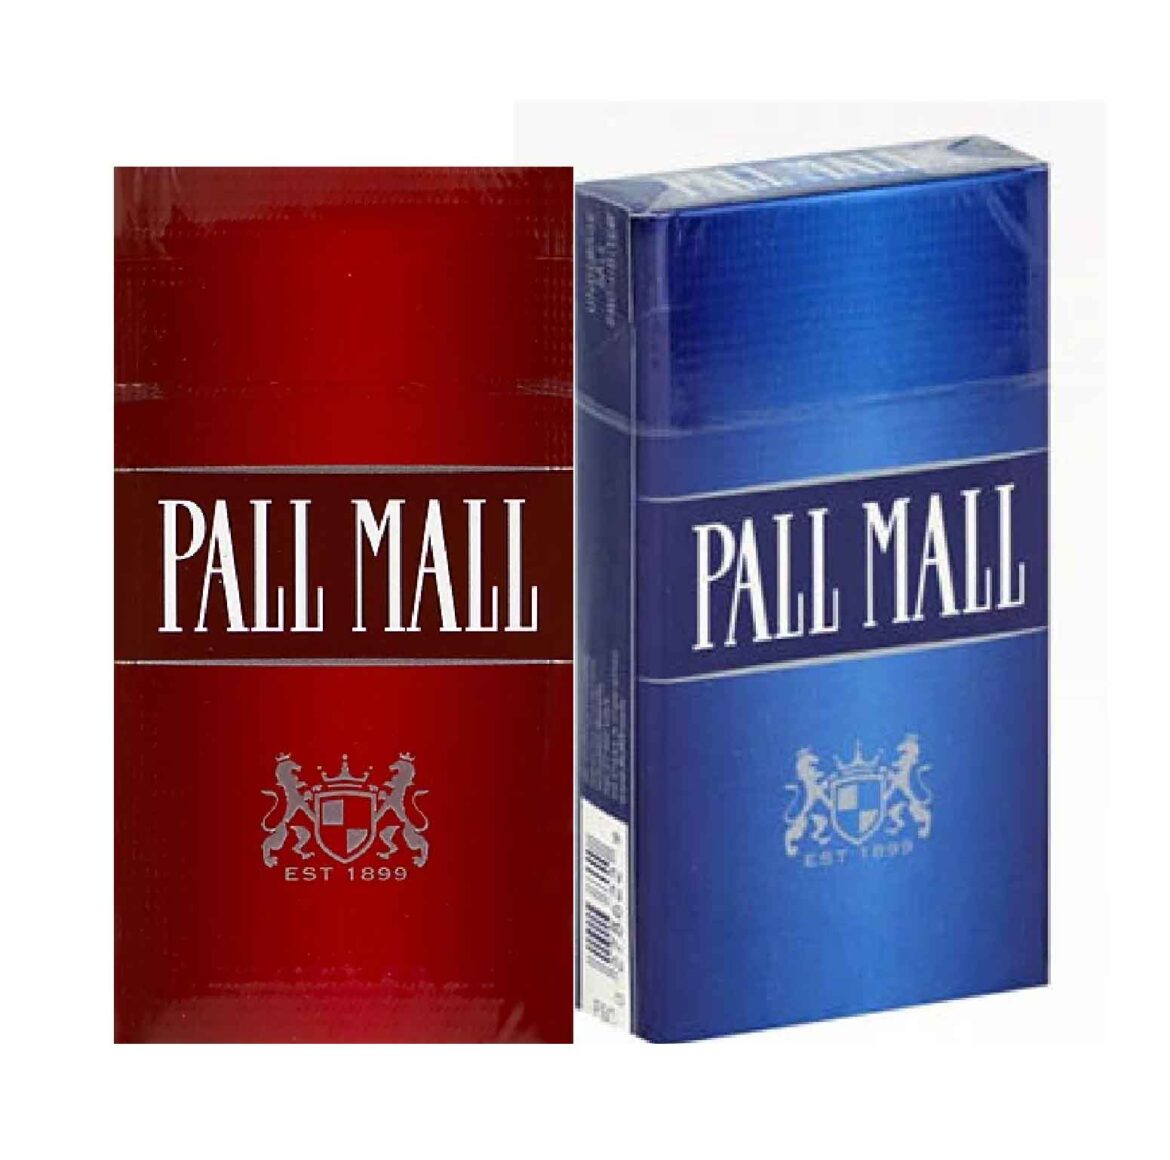 Pall Mall: Die beeindruckende Geschichte und Zukunft der Tabakmarke